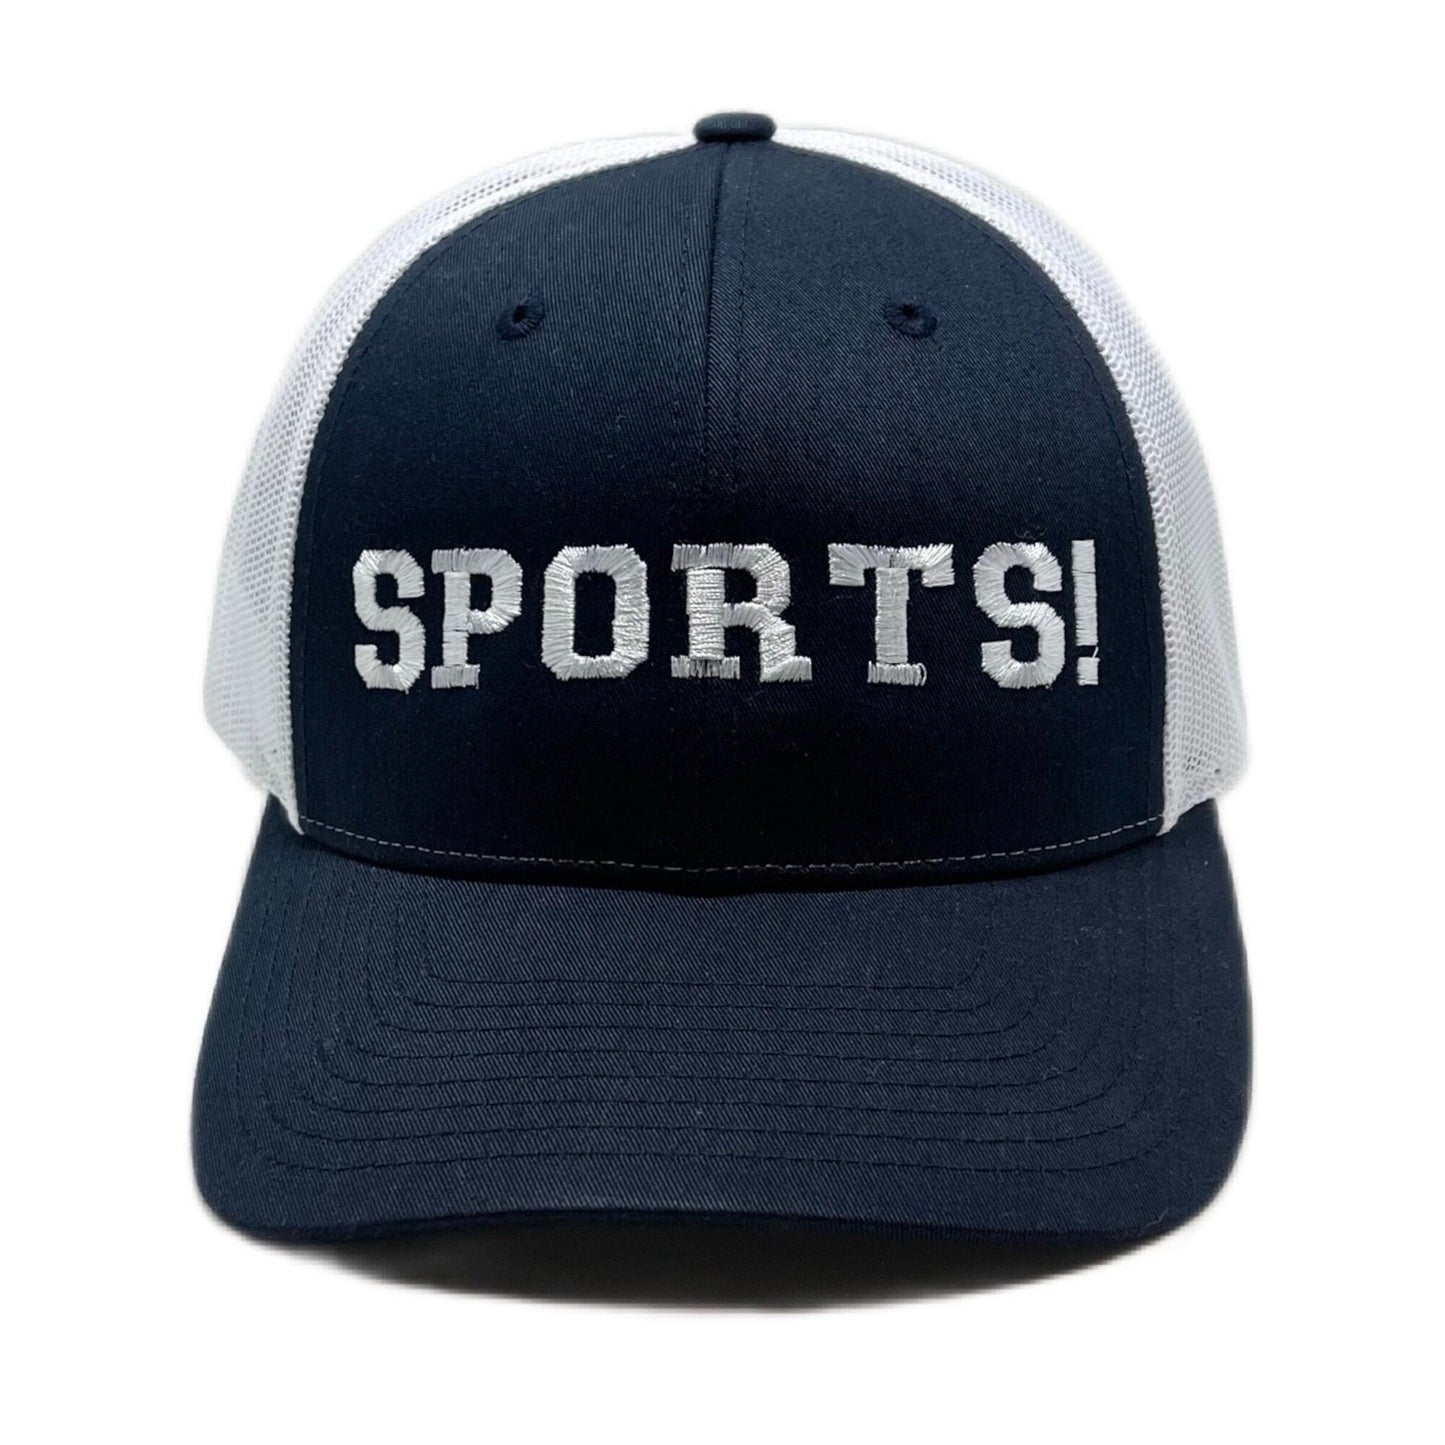 SPORTS! hat | Snapback Trucker Hat